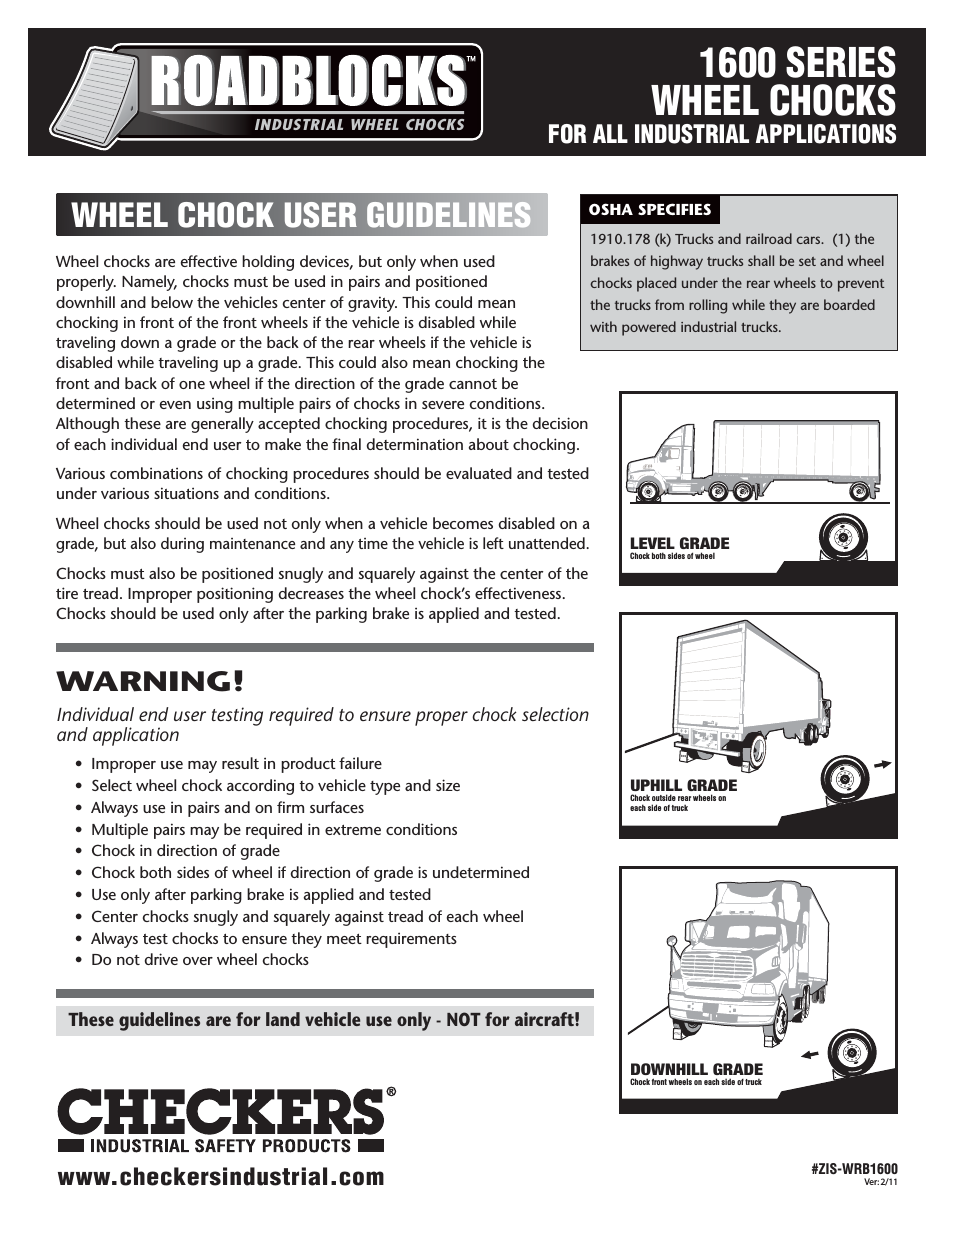 Roadblocks 1600 Wheel Chocks User Guidelines